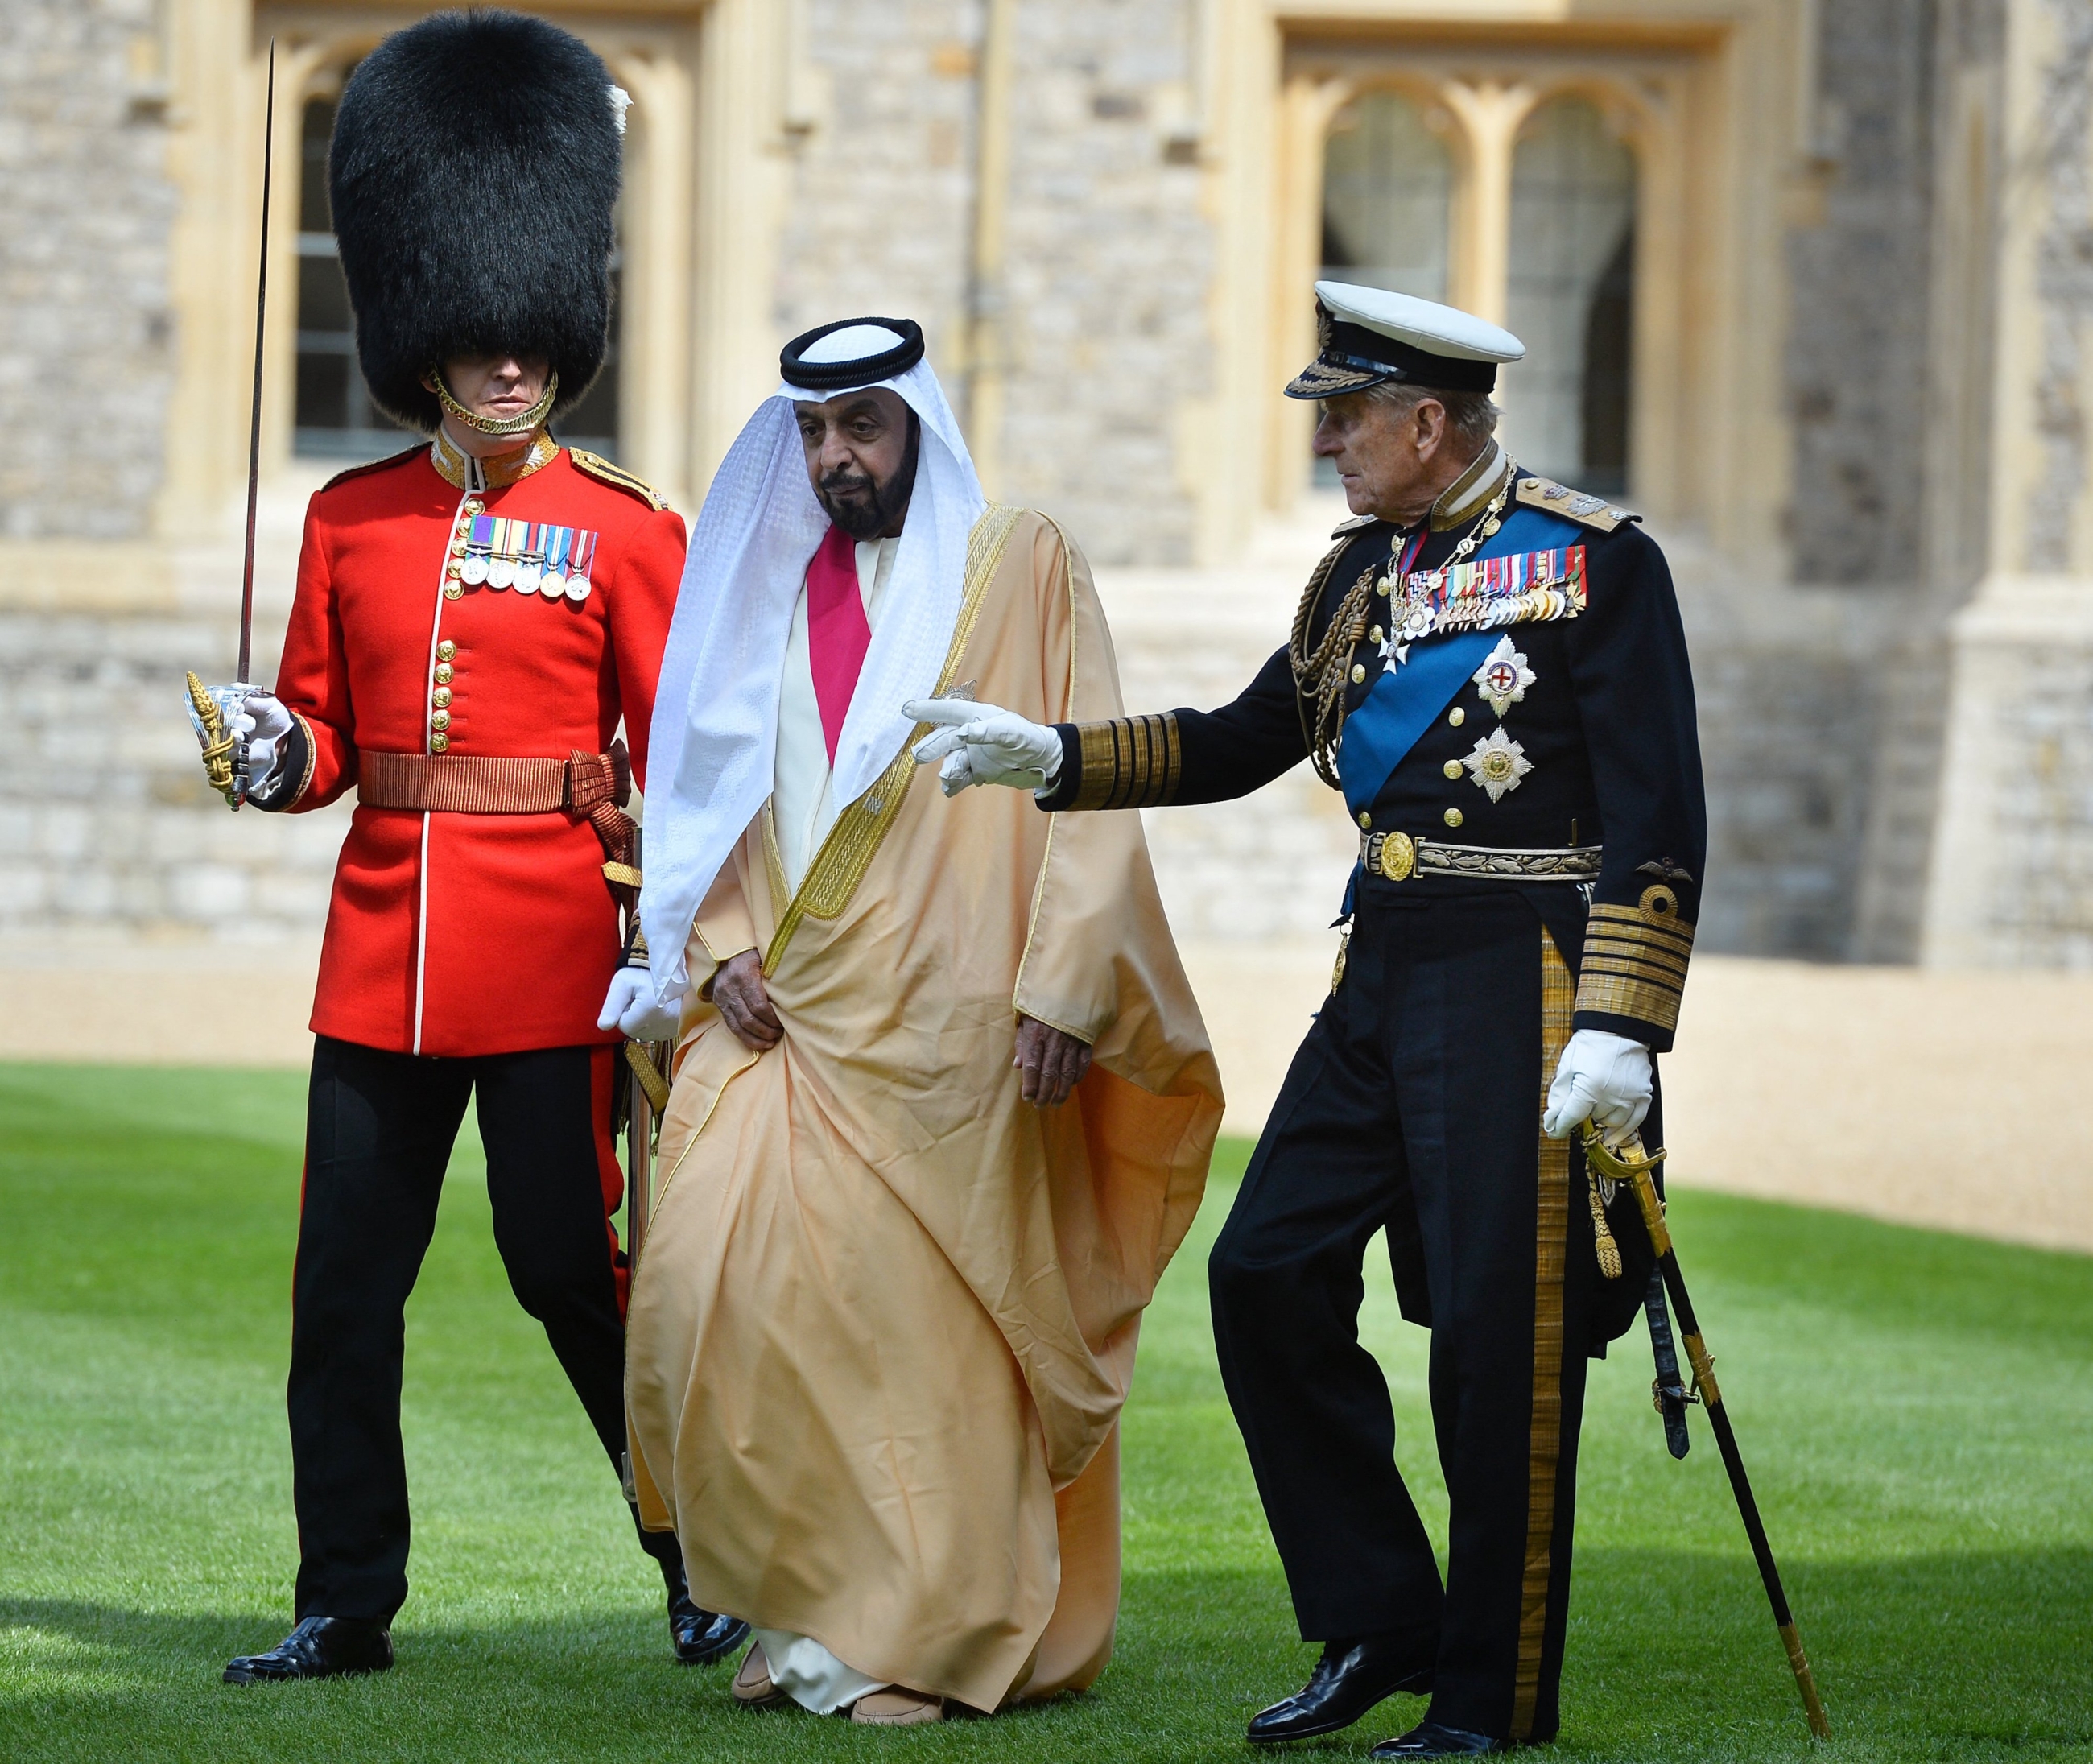 Le prince Philip et le président émirati Khalifa ben Zayed al-Nahyan inspectent les membres du 1er bataillon de gardes gallois lors d’une cérémonie de bienvenue dans le parc du château de Windsor en 2013 (AFP)